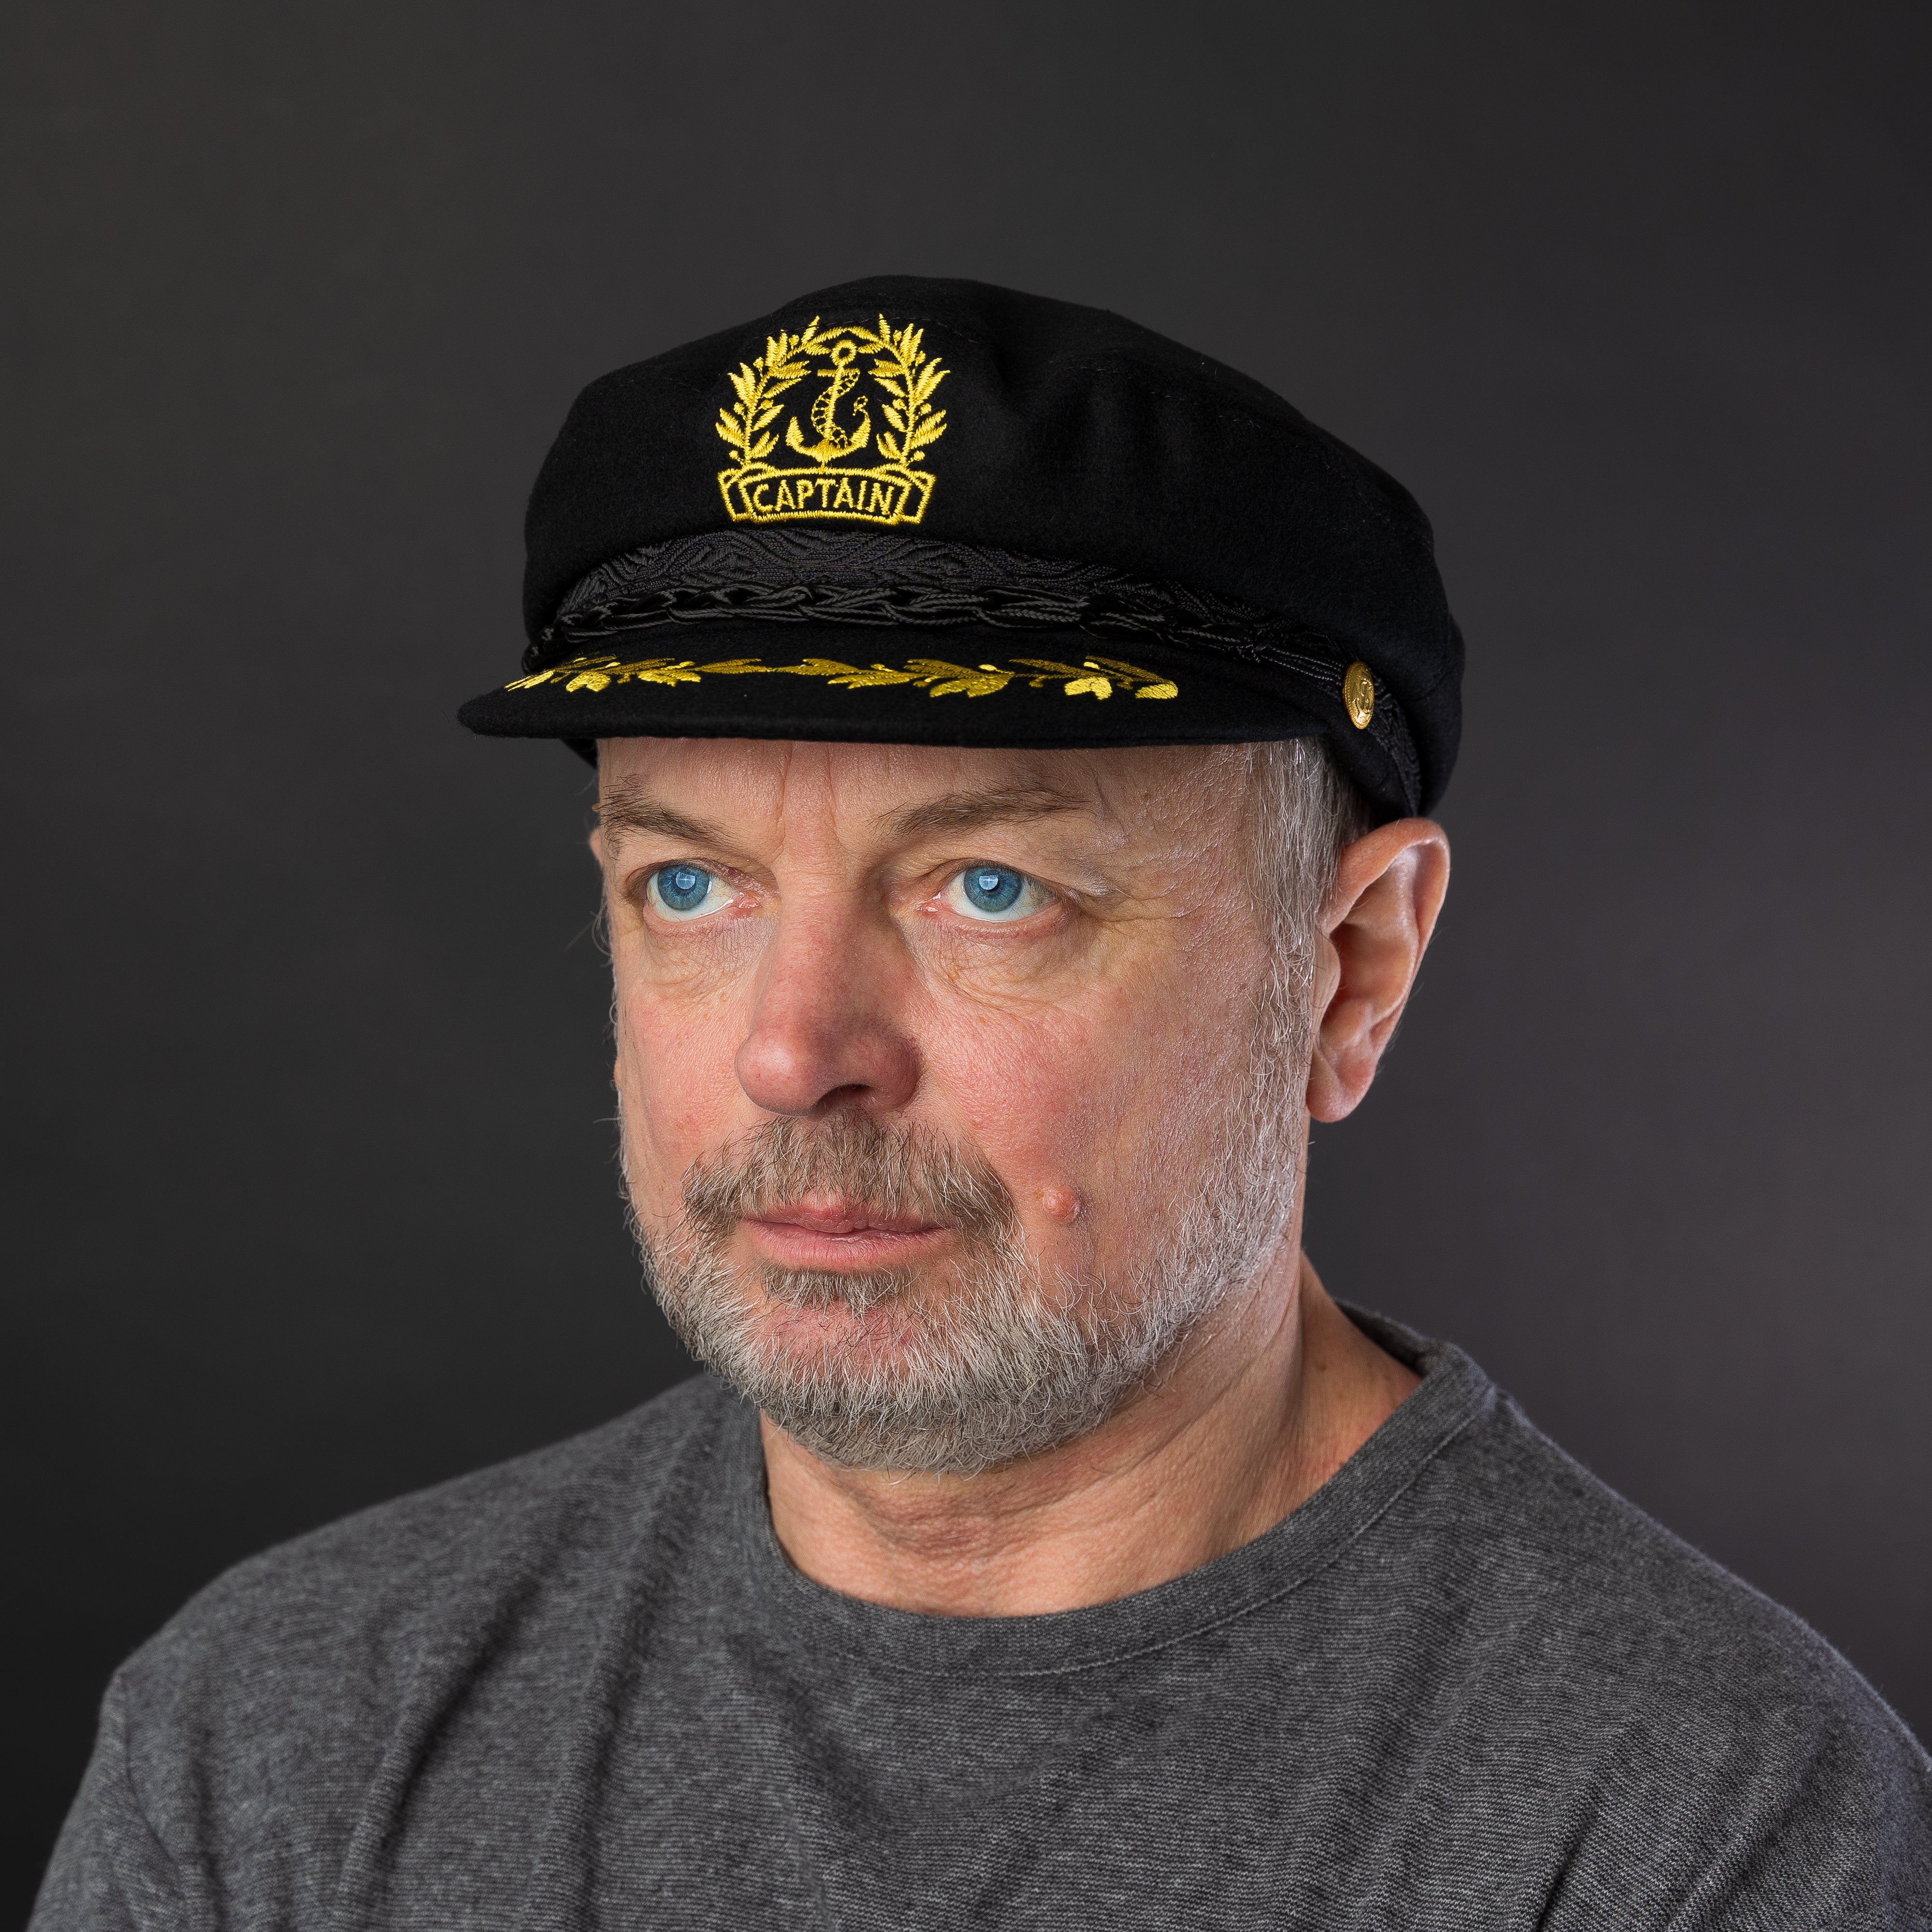 Authentic Greek Captain's Cap - Wool - Black